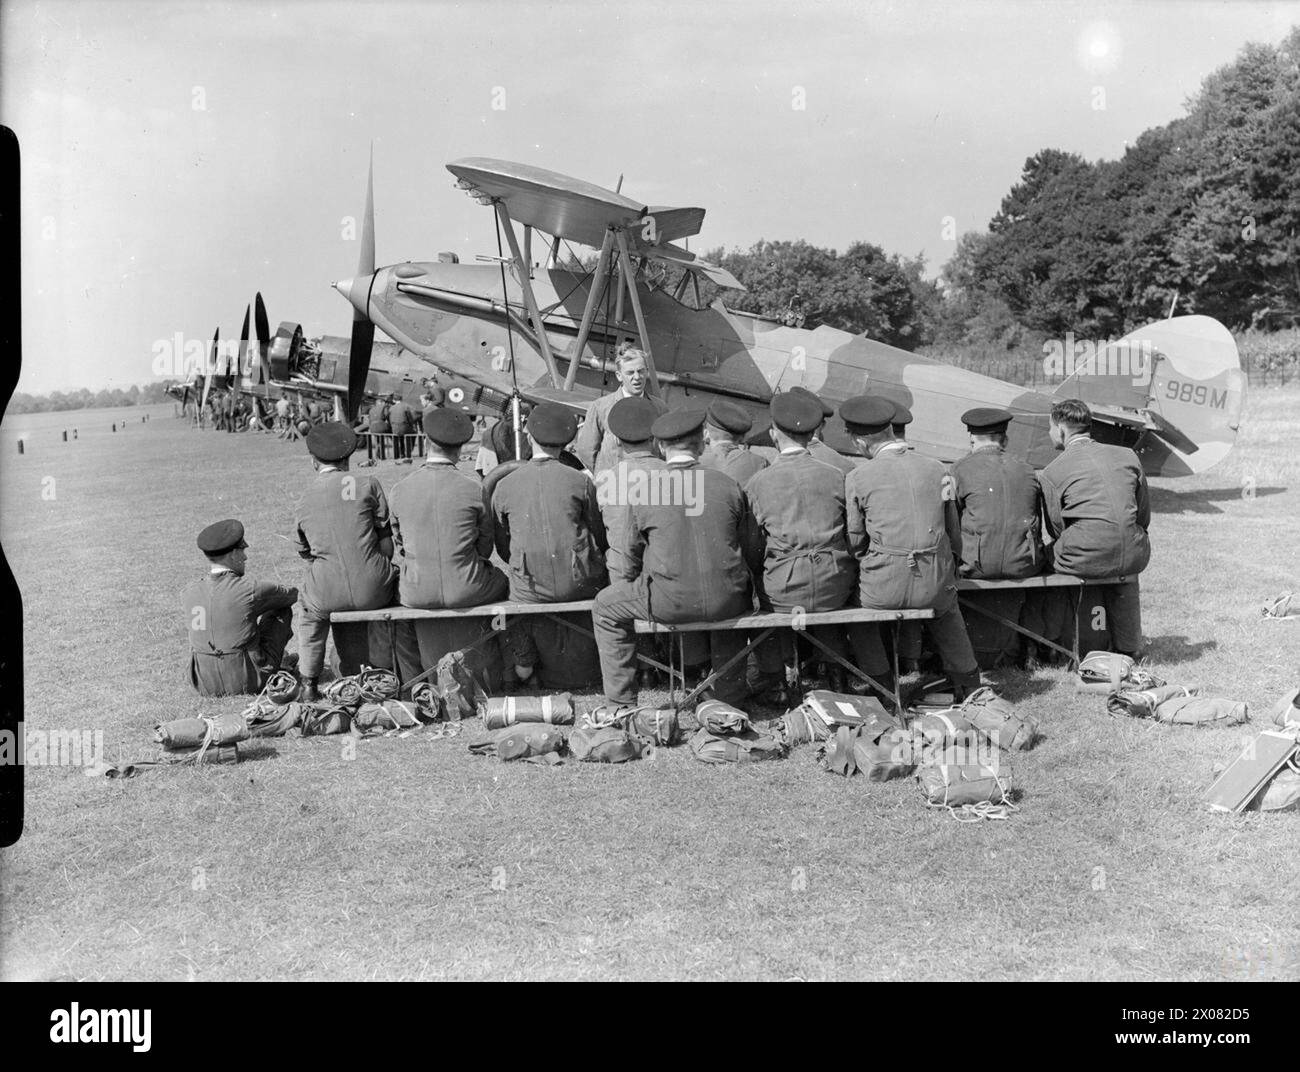 DAS TECHNISCHE AUSBILDUNGSKOMMANDO DER ROYAL AIR FORCE, 1940-1945. - Flugzeuglehrlinge der Schule für technische Ausbildung Nr. 1 hören einen Vortrag über die Wartung von Flugzeugen im Feld, vor einer Reihe von Lehrflugzeugen auf dem Flugplatz in Halton, Buckinghamshire. 989M ist eine Hawker Audax Mark I, ehemals K3057 der No. 2 Squadron RAF, die 1937 in den Flugzeugstatus der Royal Air Force, School, Technical Training, 5, Locking reduziert wurde Stockfoto